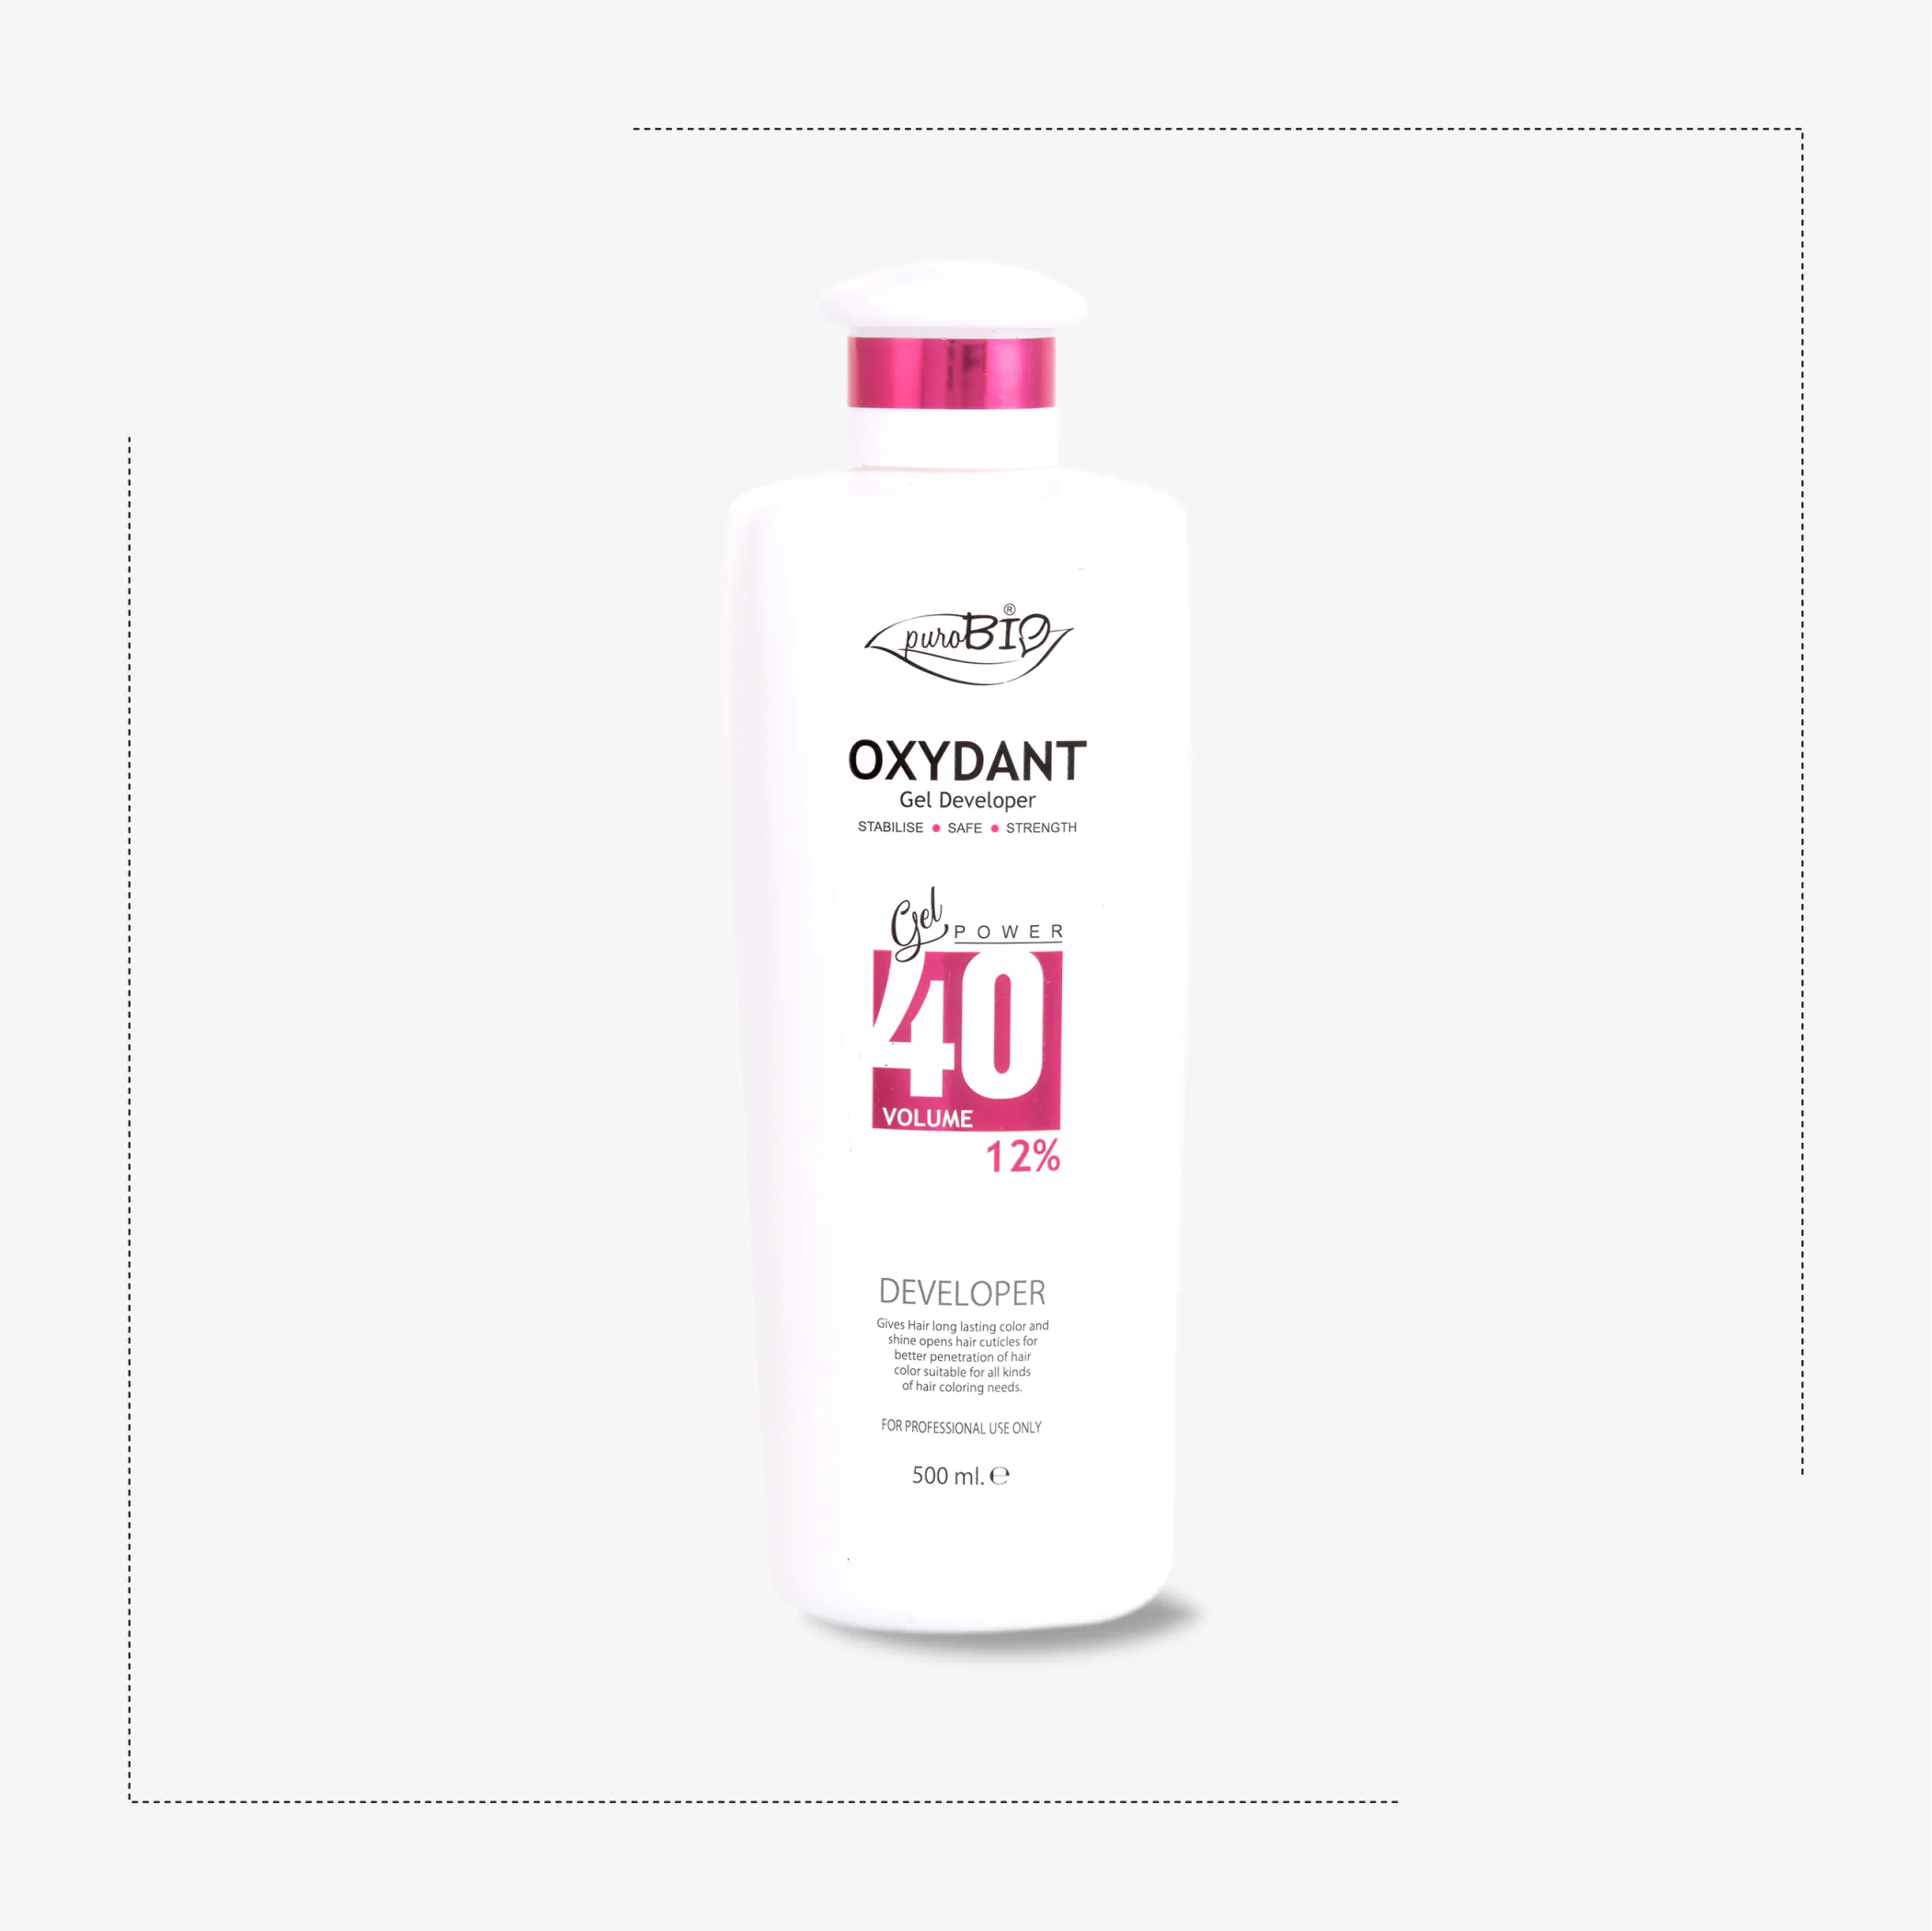 Purobio Oxydant Gel Developer 40volume 12% hair colour cream Man & Woman  500 ml - JioMart